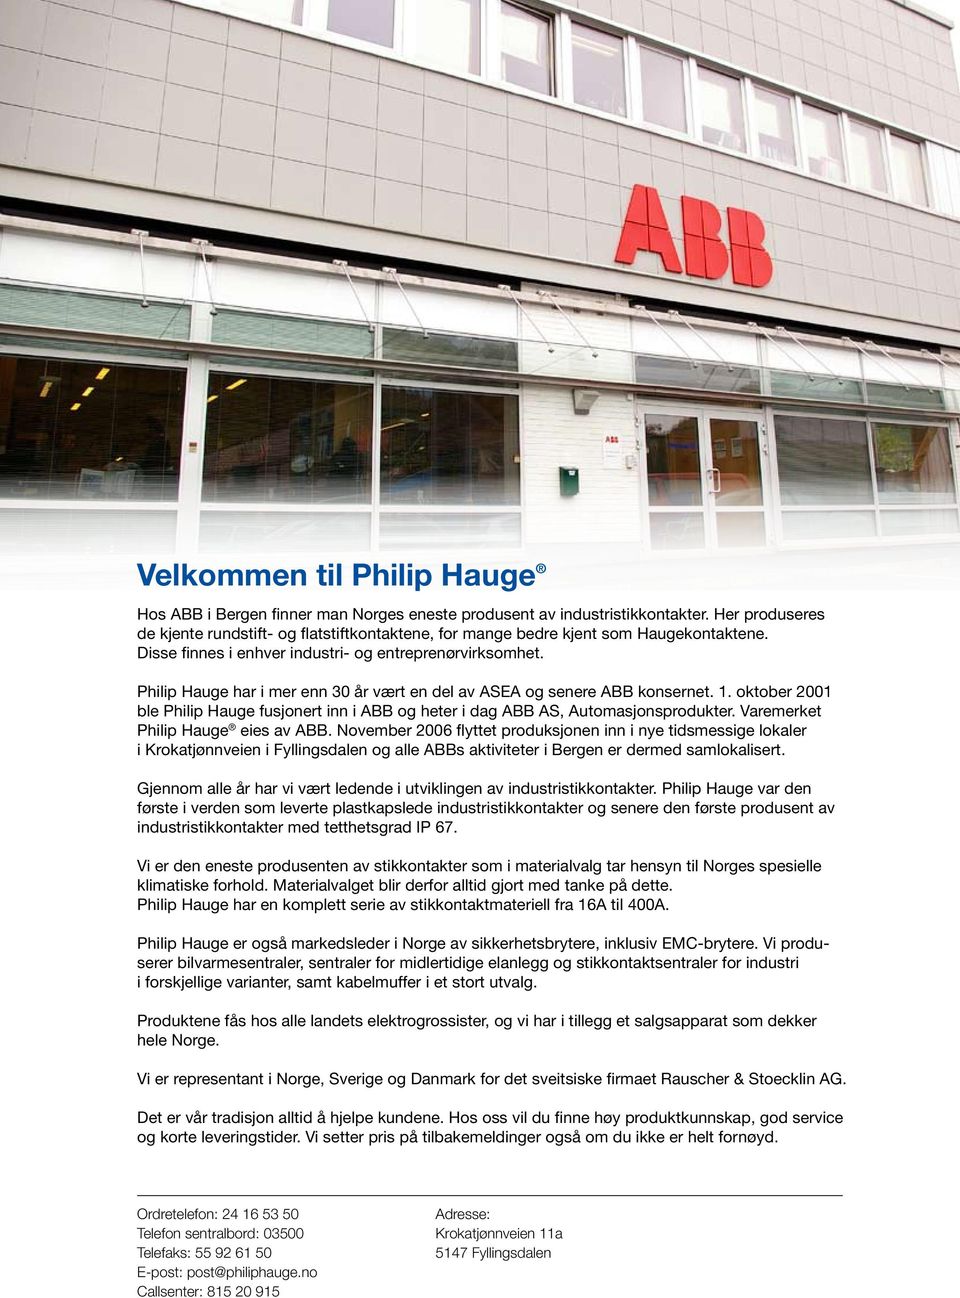 Philip Hauge har i mer enn 30 år vært en del av ASEA og senere ABB konsernet. 1. oktober 2001 ble Philip Hauge fusjonert inn i ABB og heter i dag ABB AS, Automasjonsprodukter.